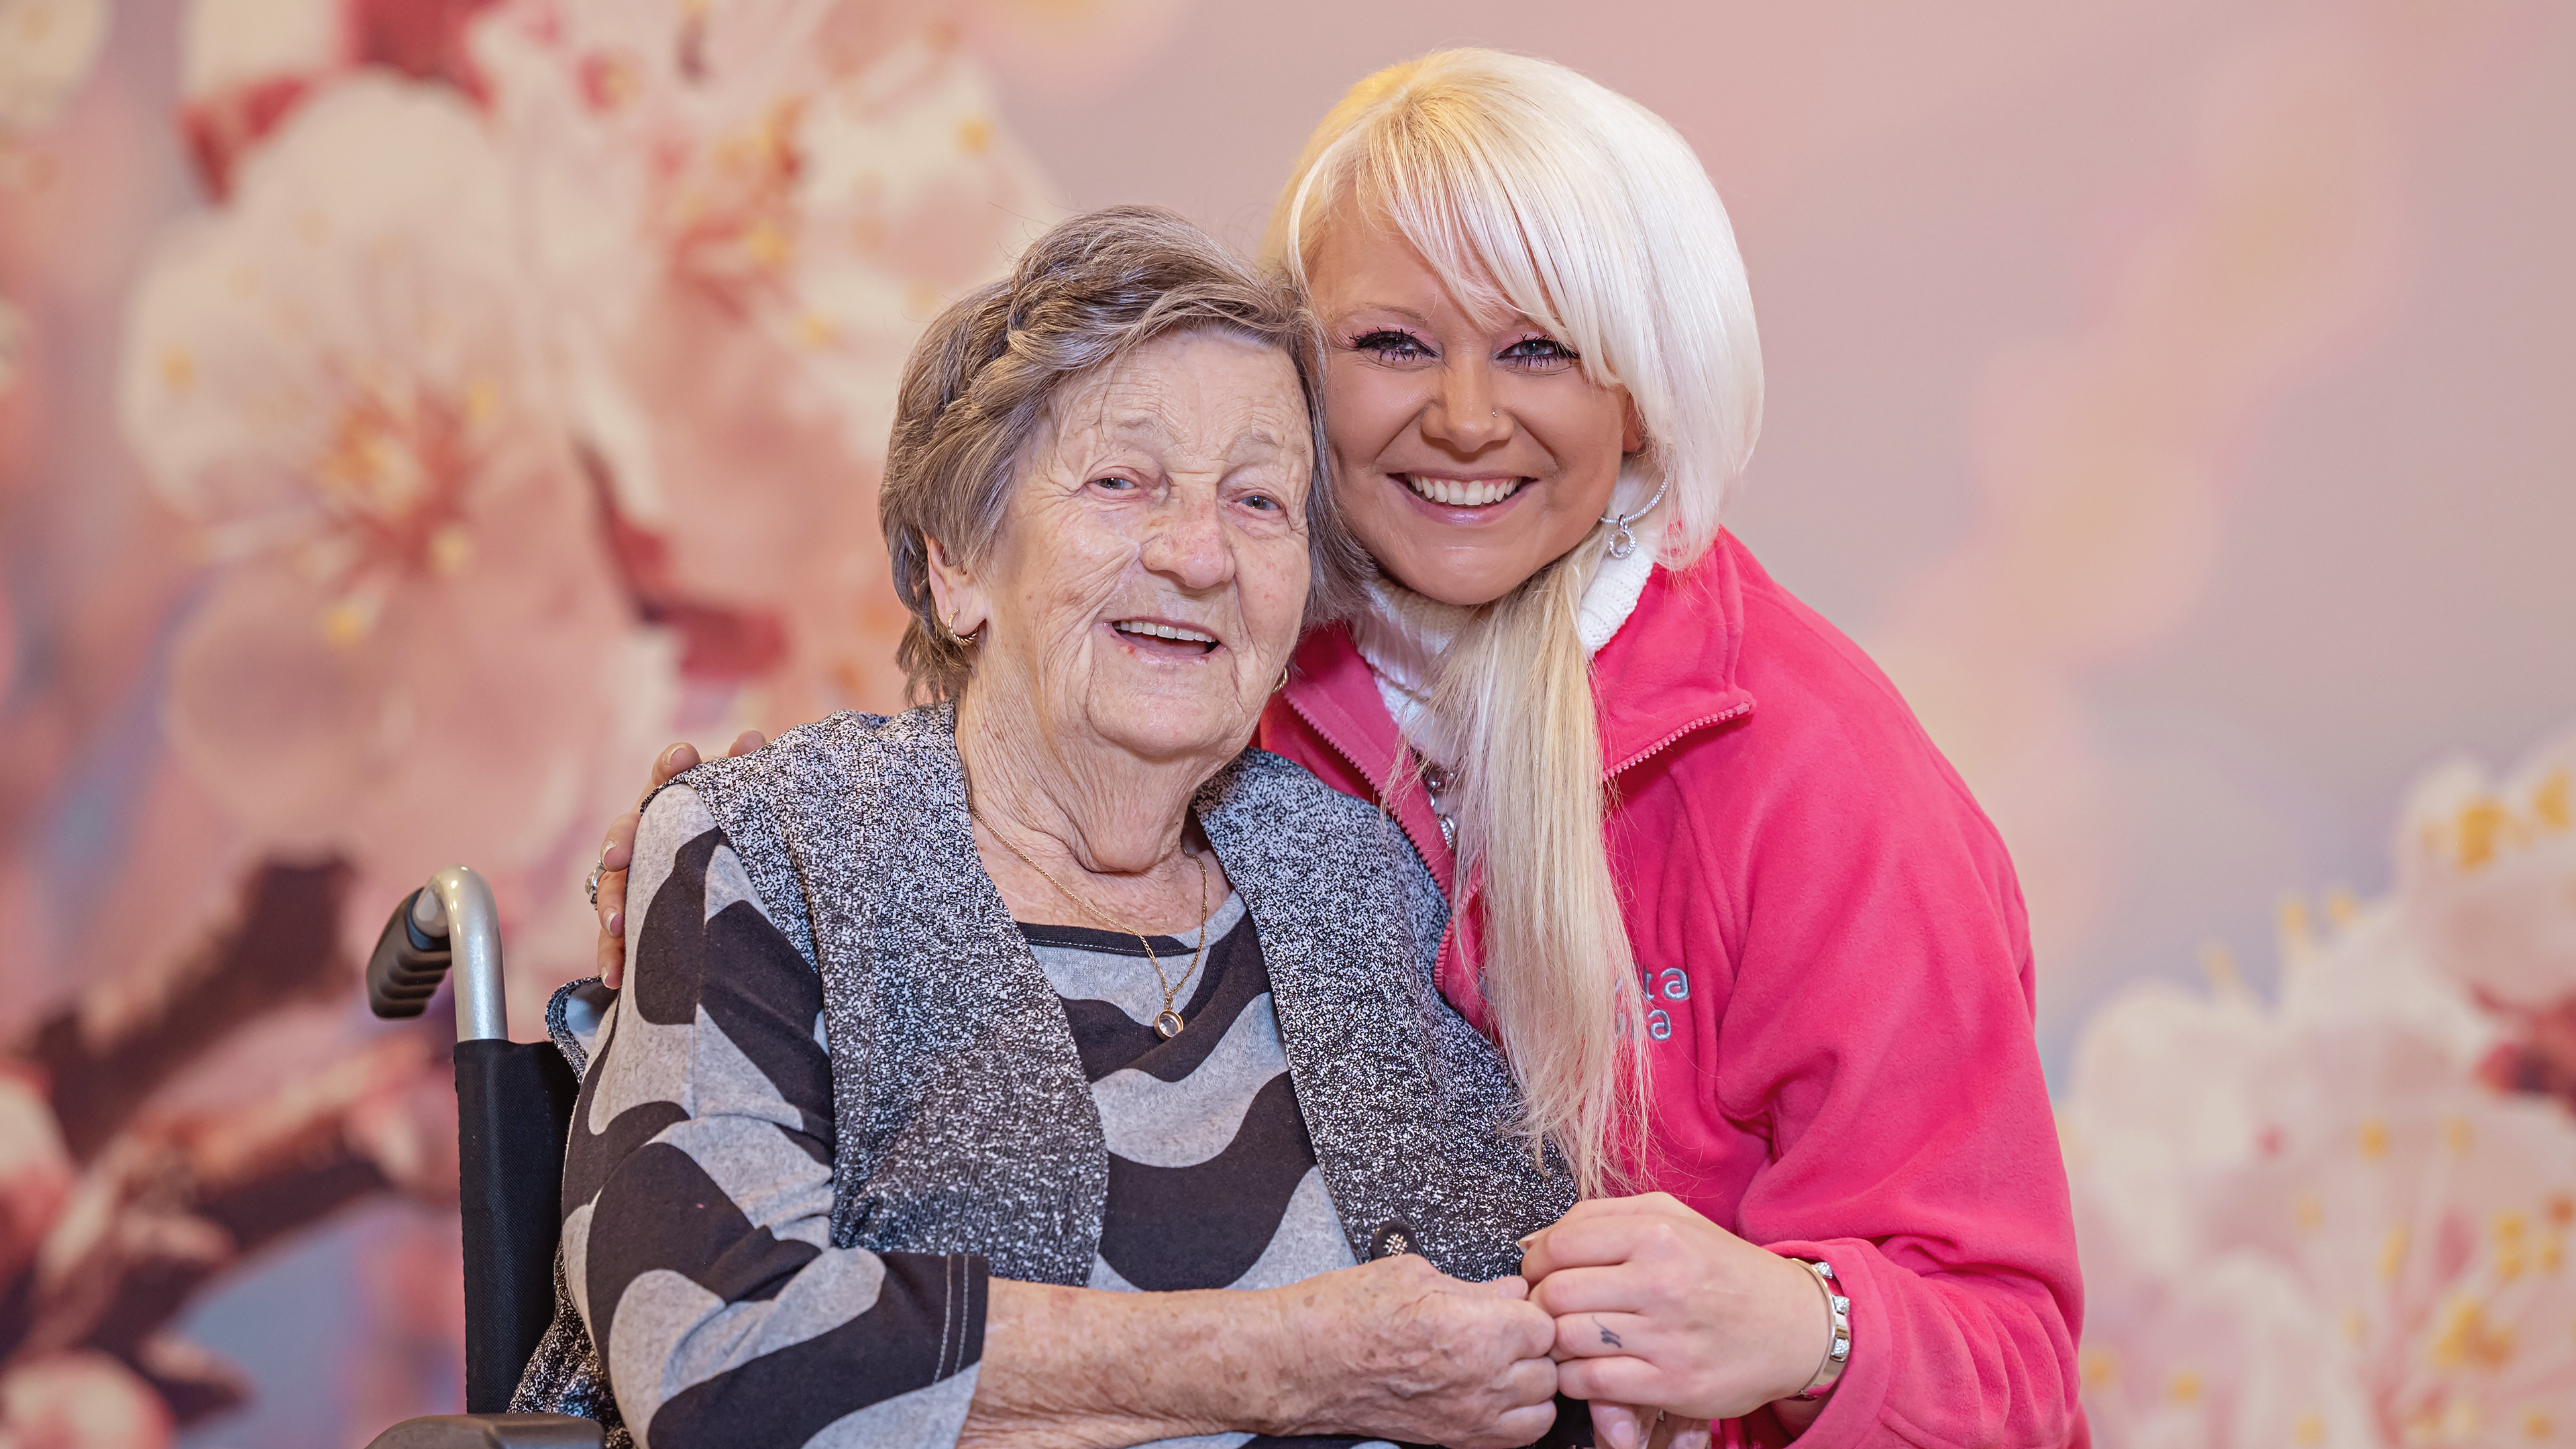 Mitarbeiterin der LaVitaCura Pflegedienst GmbH umarmt ältere Dame im Rollstuhl ©LaVitaCura Pflegedienst GmbH